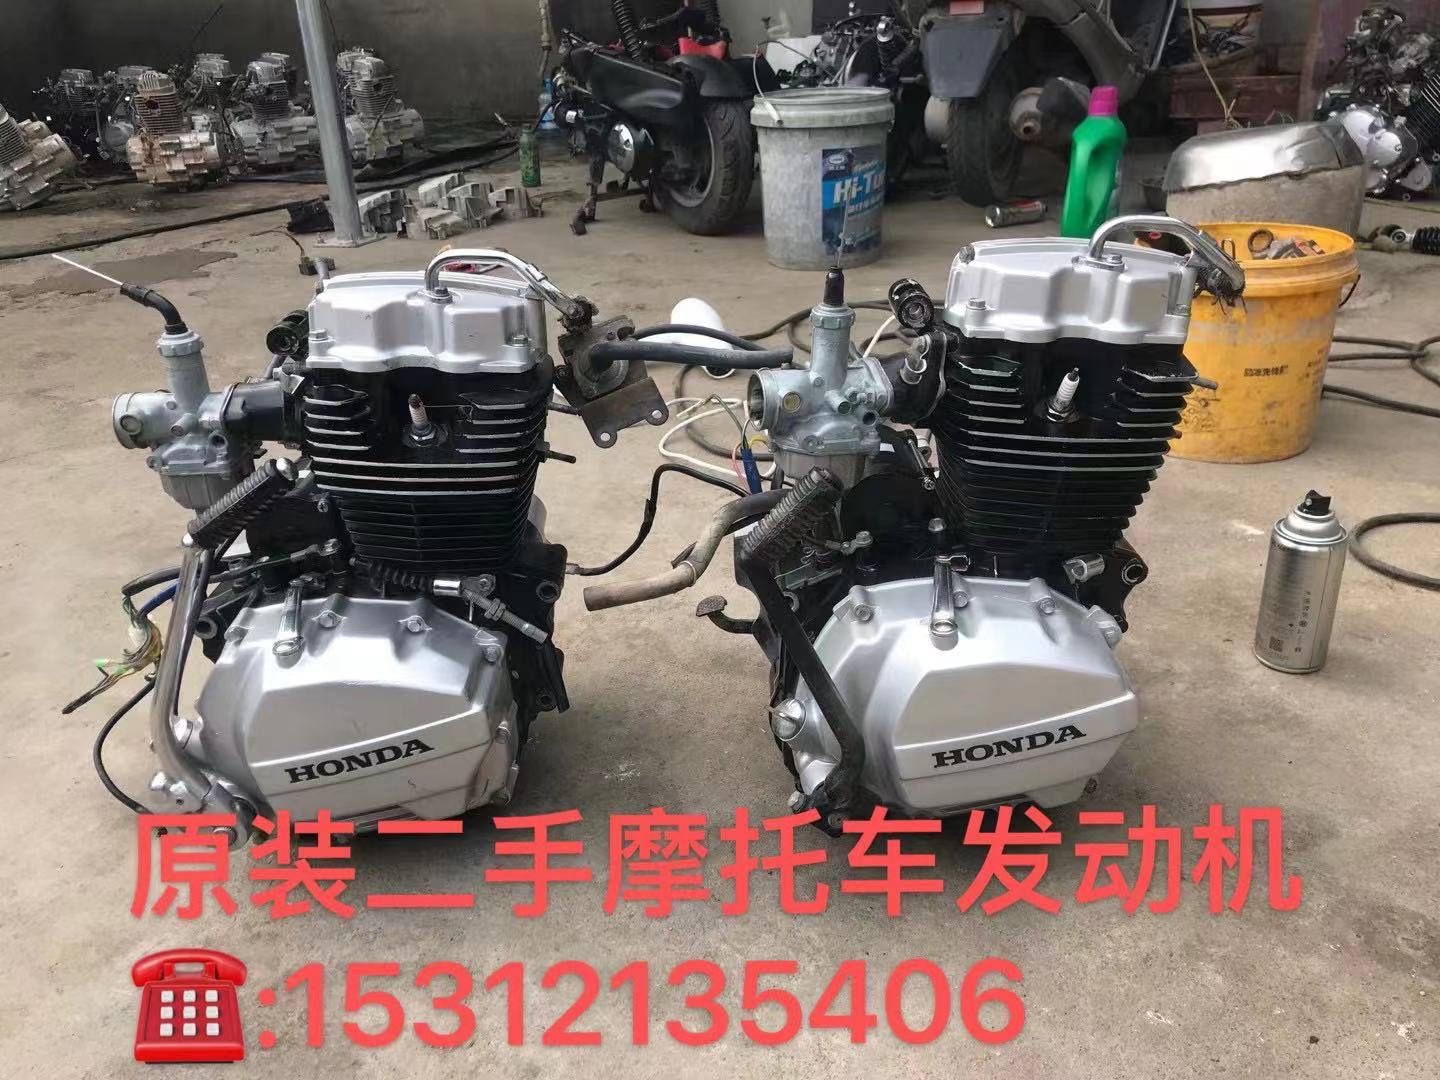 中古純正バイクエンジン 新大陸五陽ホンダ125エンジン 国産CG125汎用150